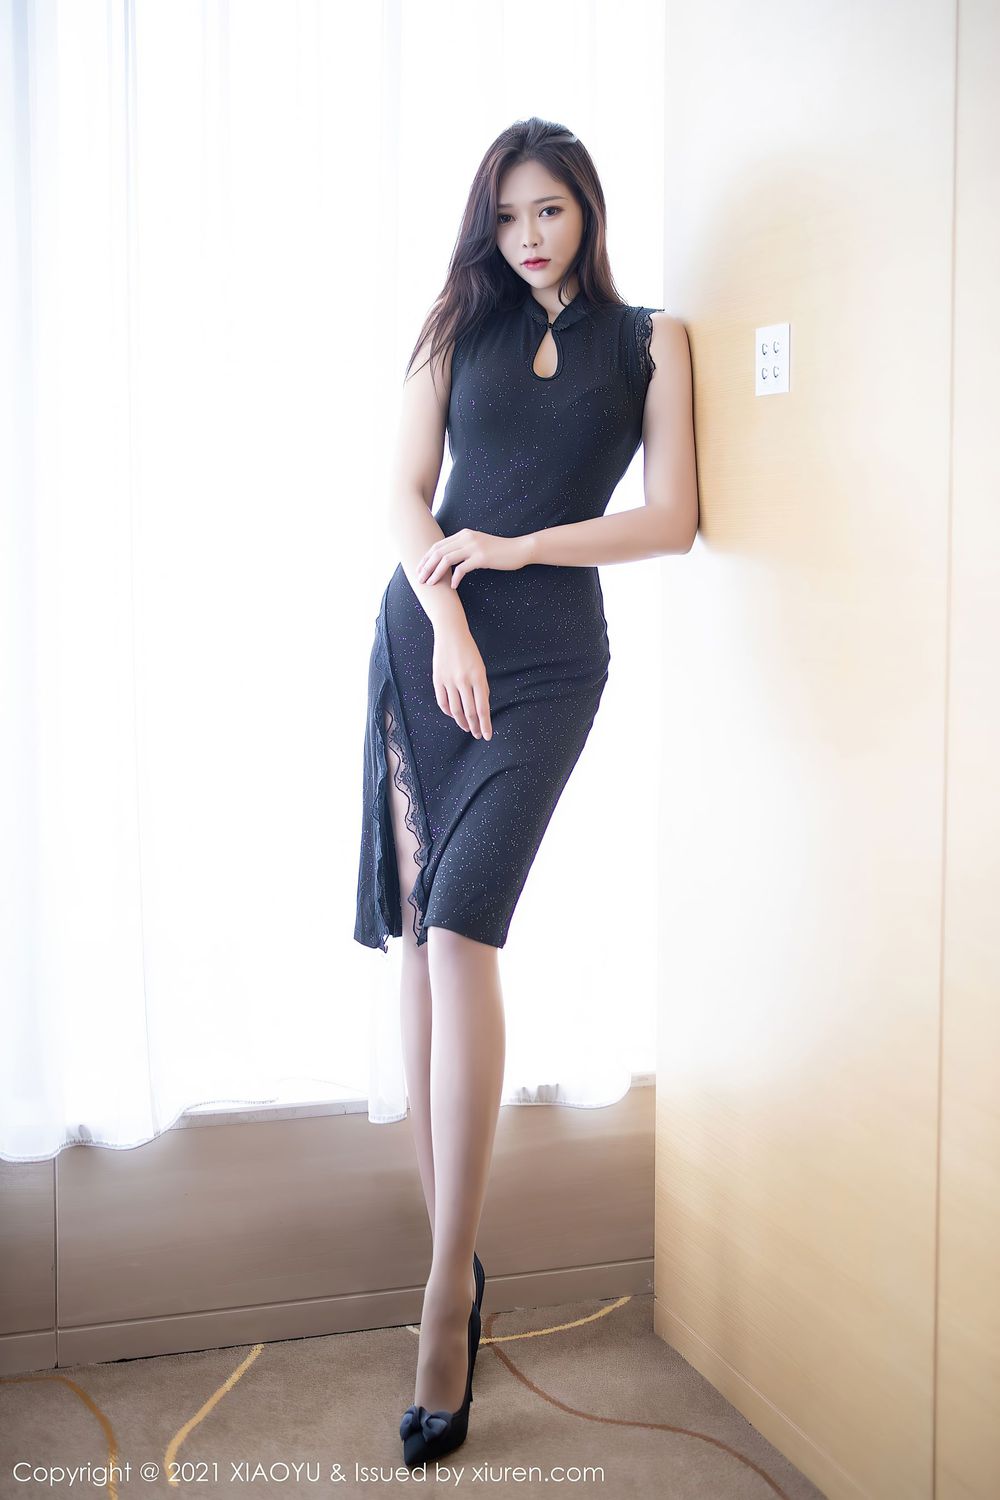 美女模特小娜比 - 优雅礼裙+丝袜系列妖娆写真